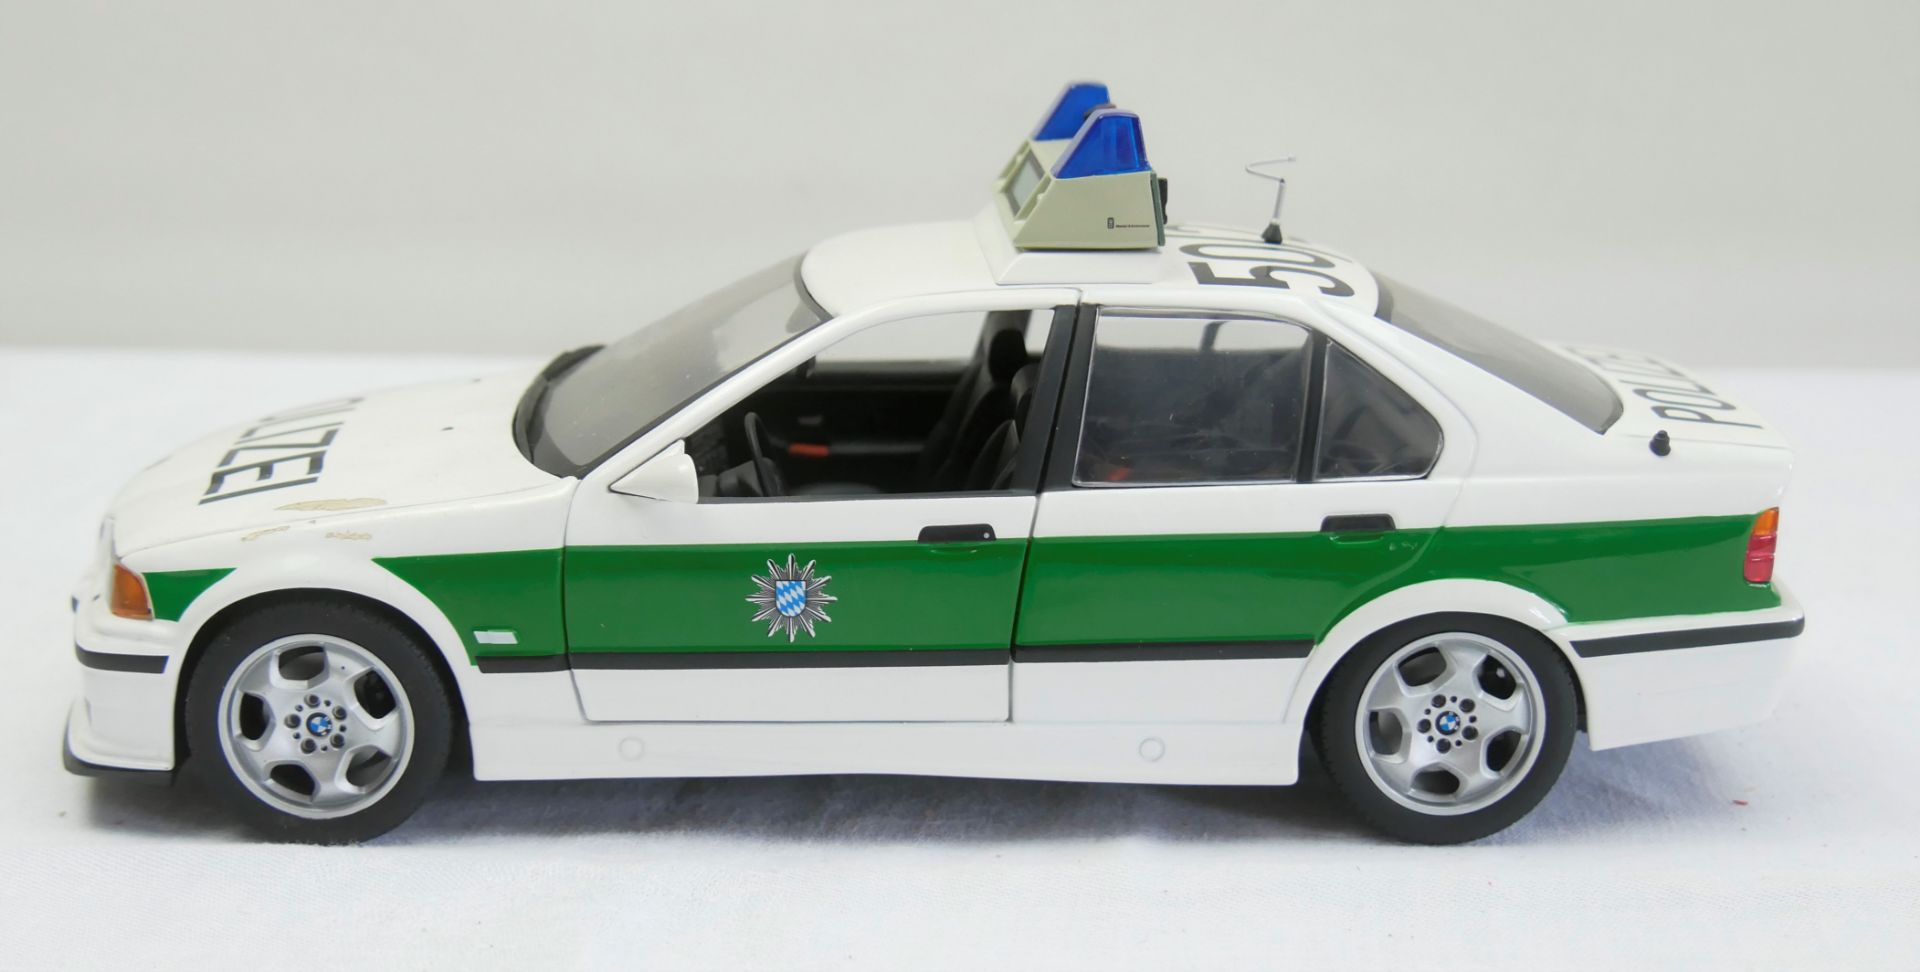 Aus Sammelauflösung! BMW 3 series, weiß metallic grün , Modellauto UT Models "Polizei", Maßstab 1: